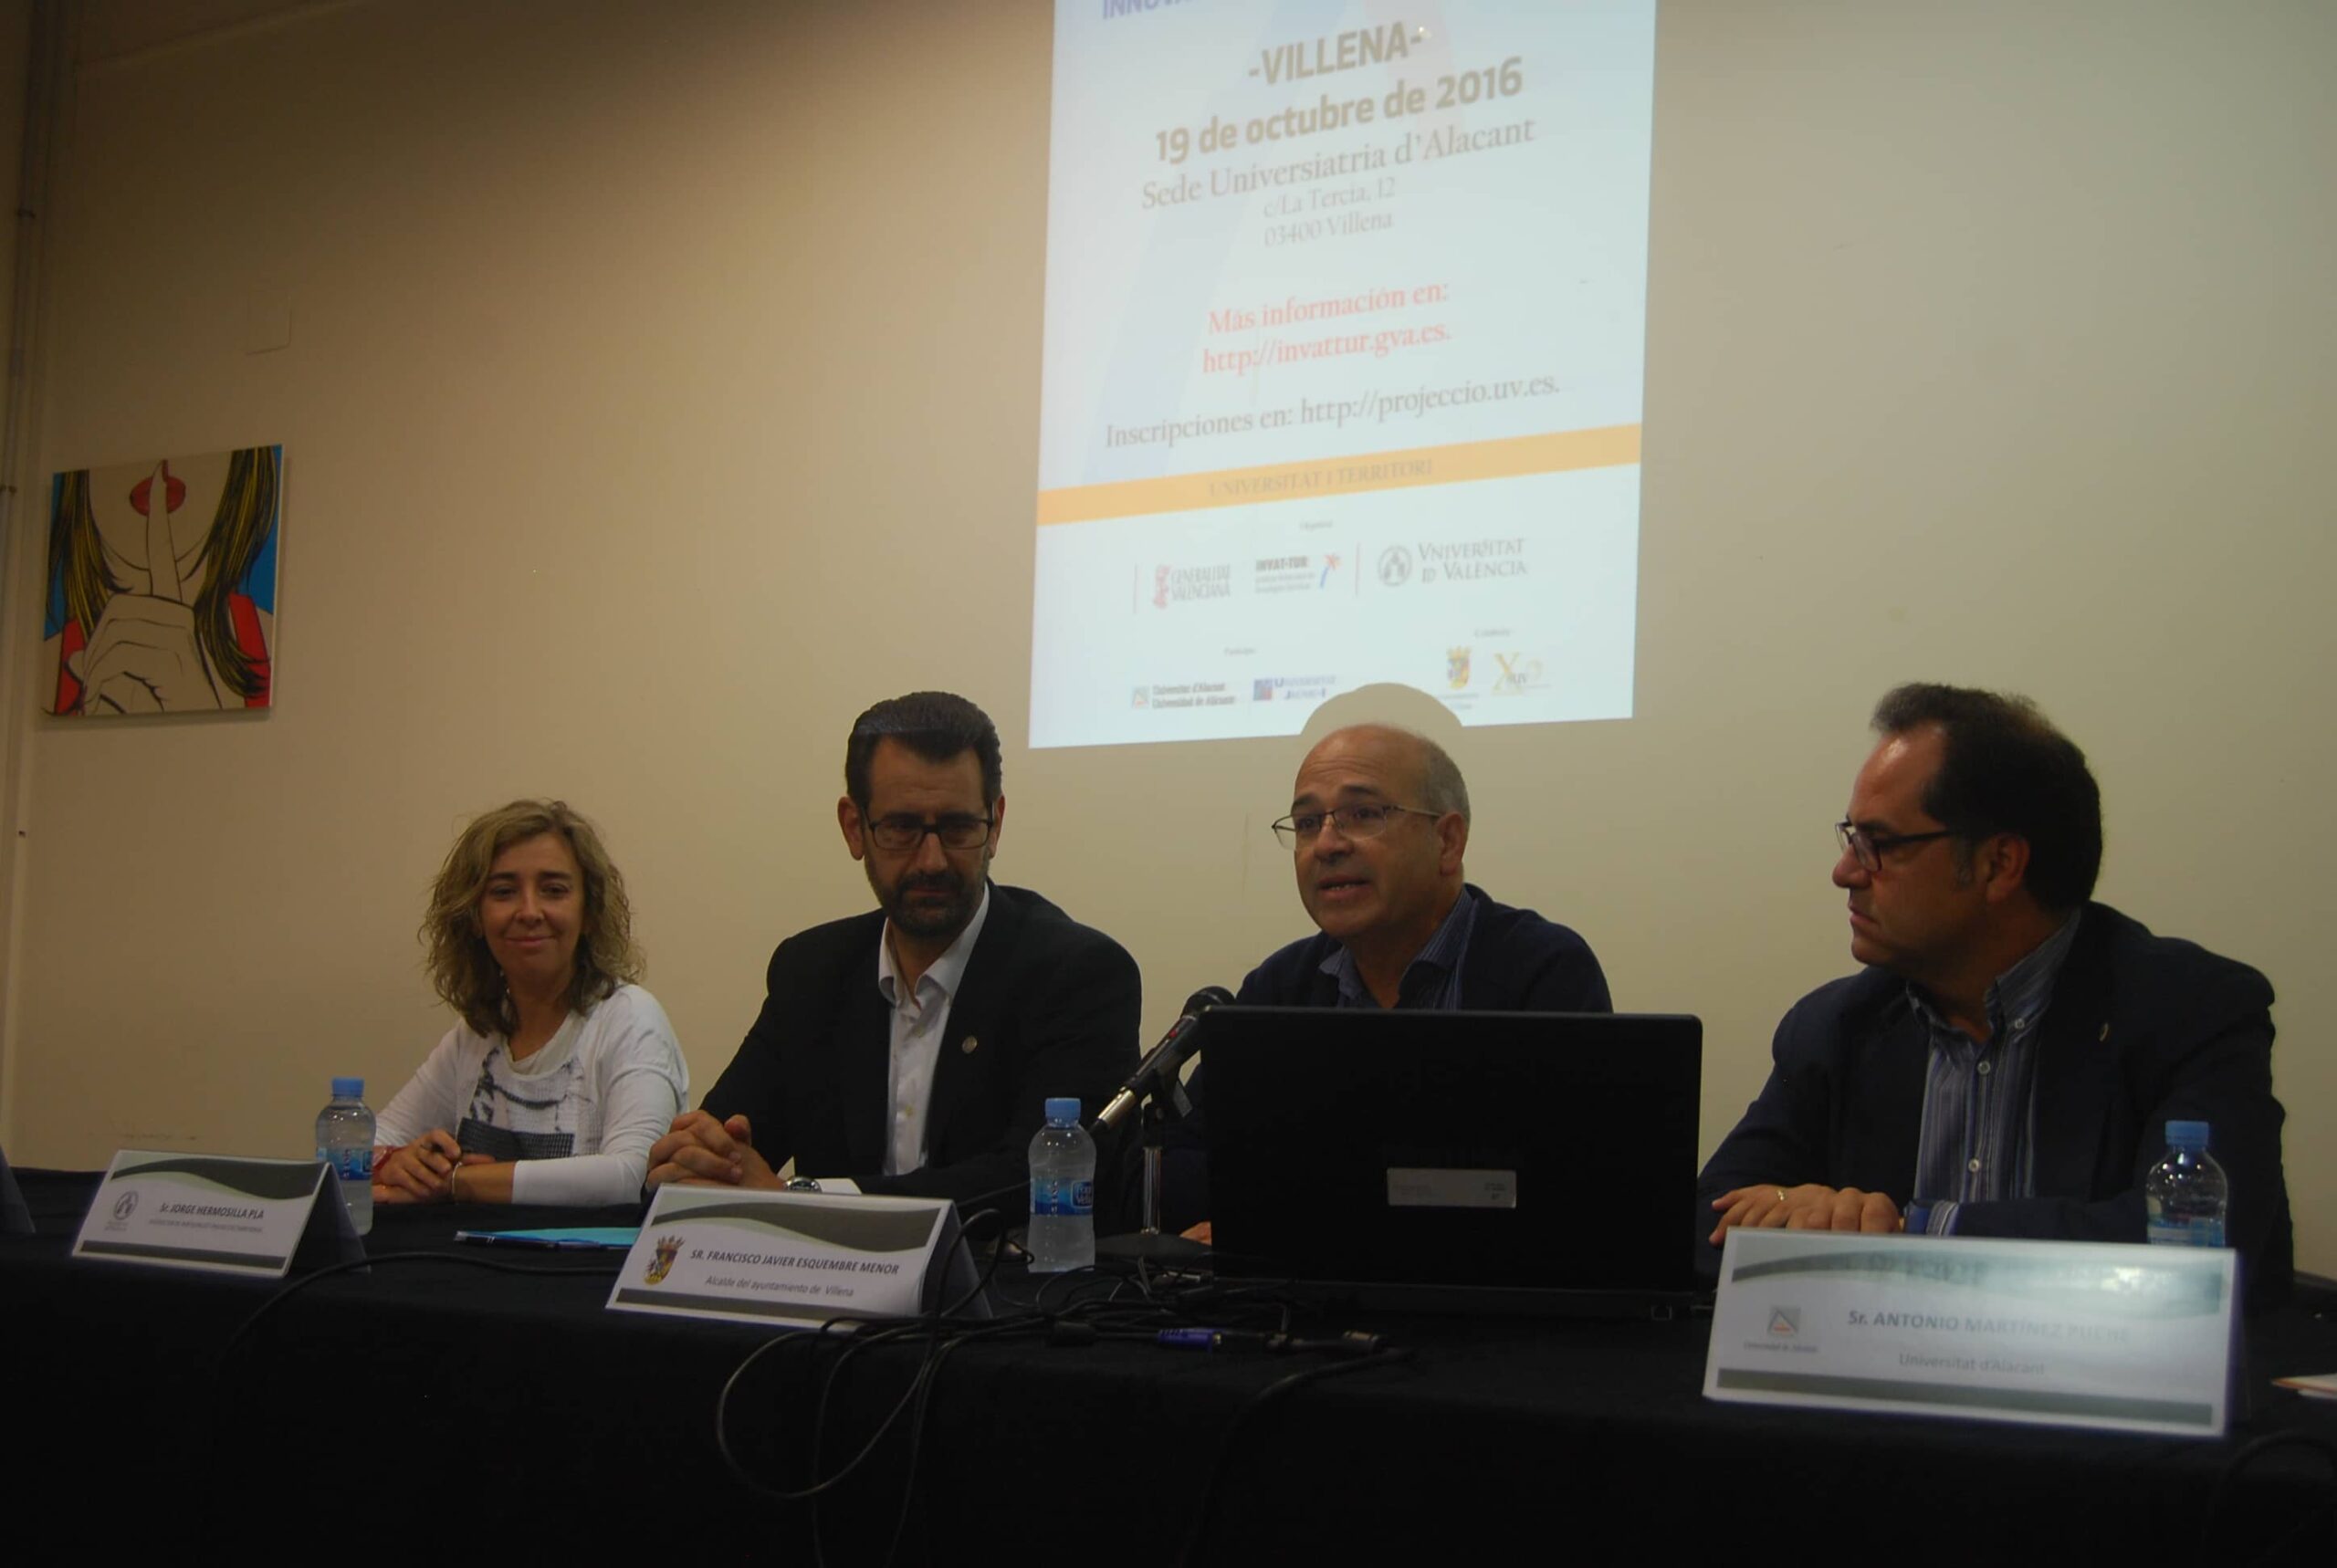 El Conseller de Turismo clausura en Villena las jornadas de Planificación turística en la Comunidad Valenciana